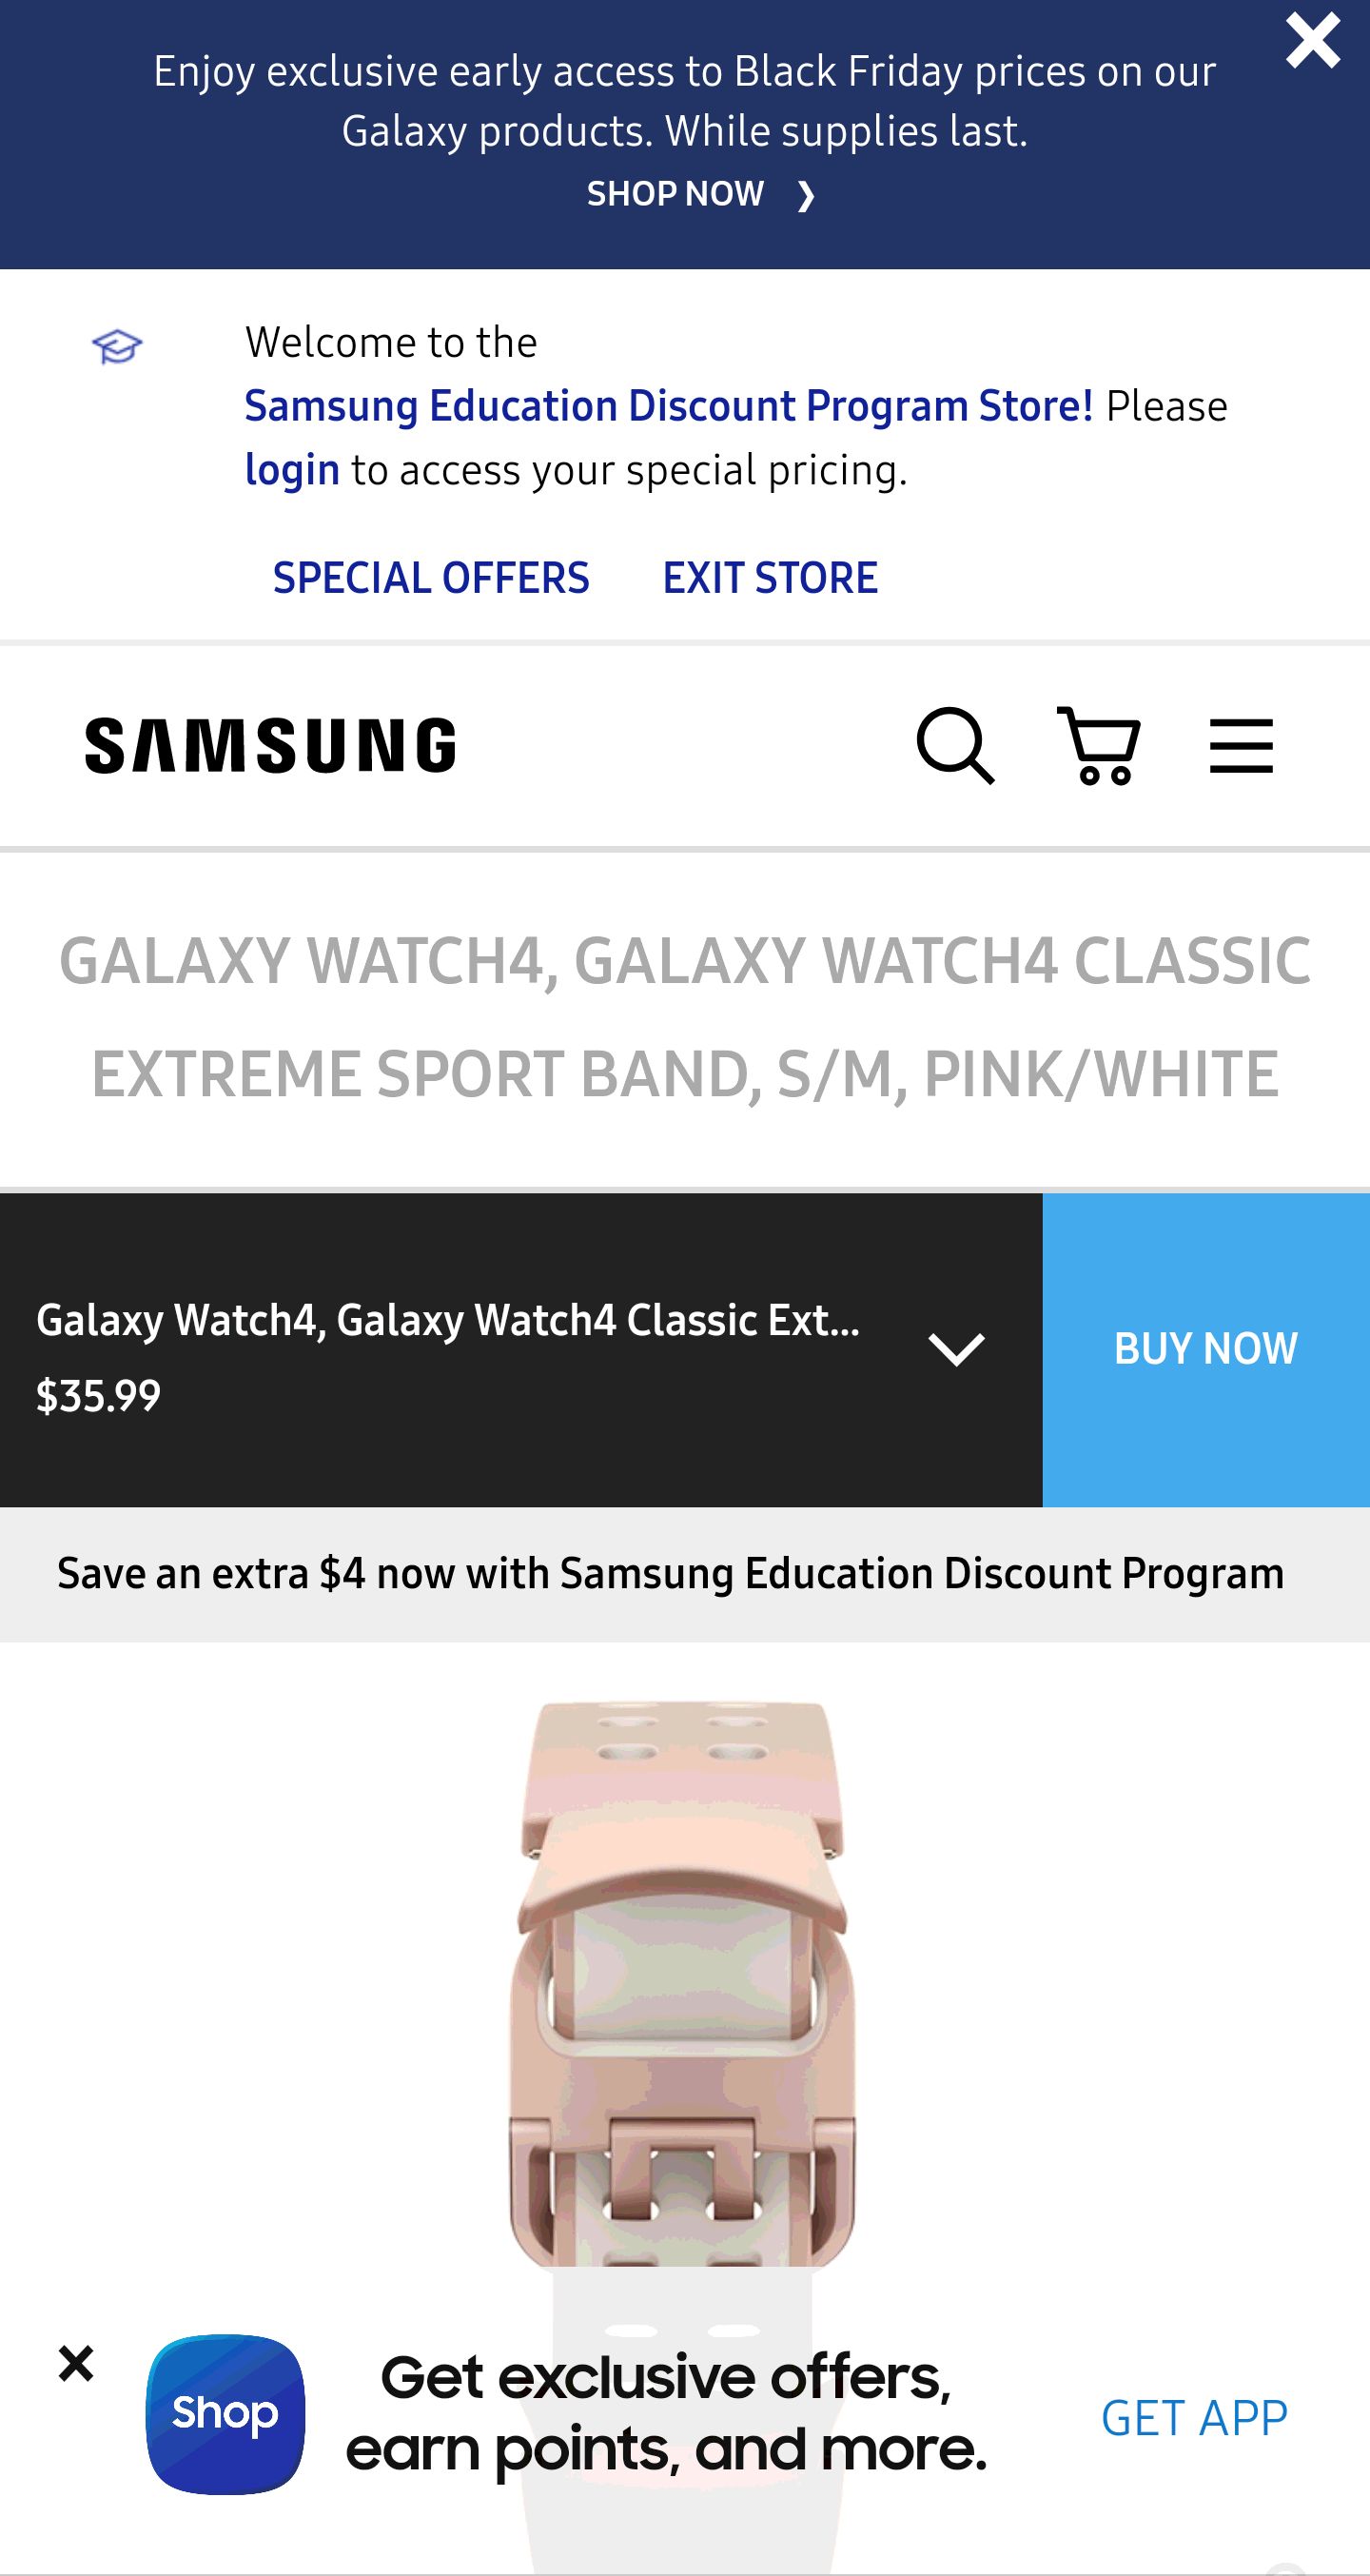 Galaxy Watch4, Galaxy Watch4 Classic Extreme Sport Band 免費錶帶